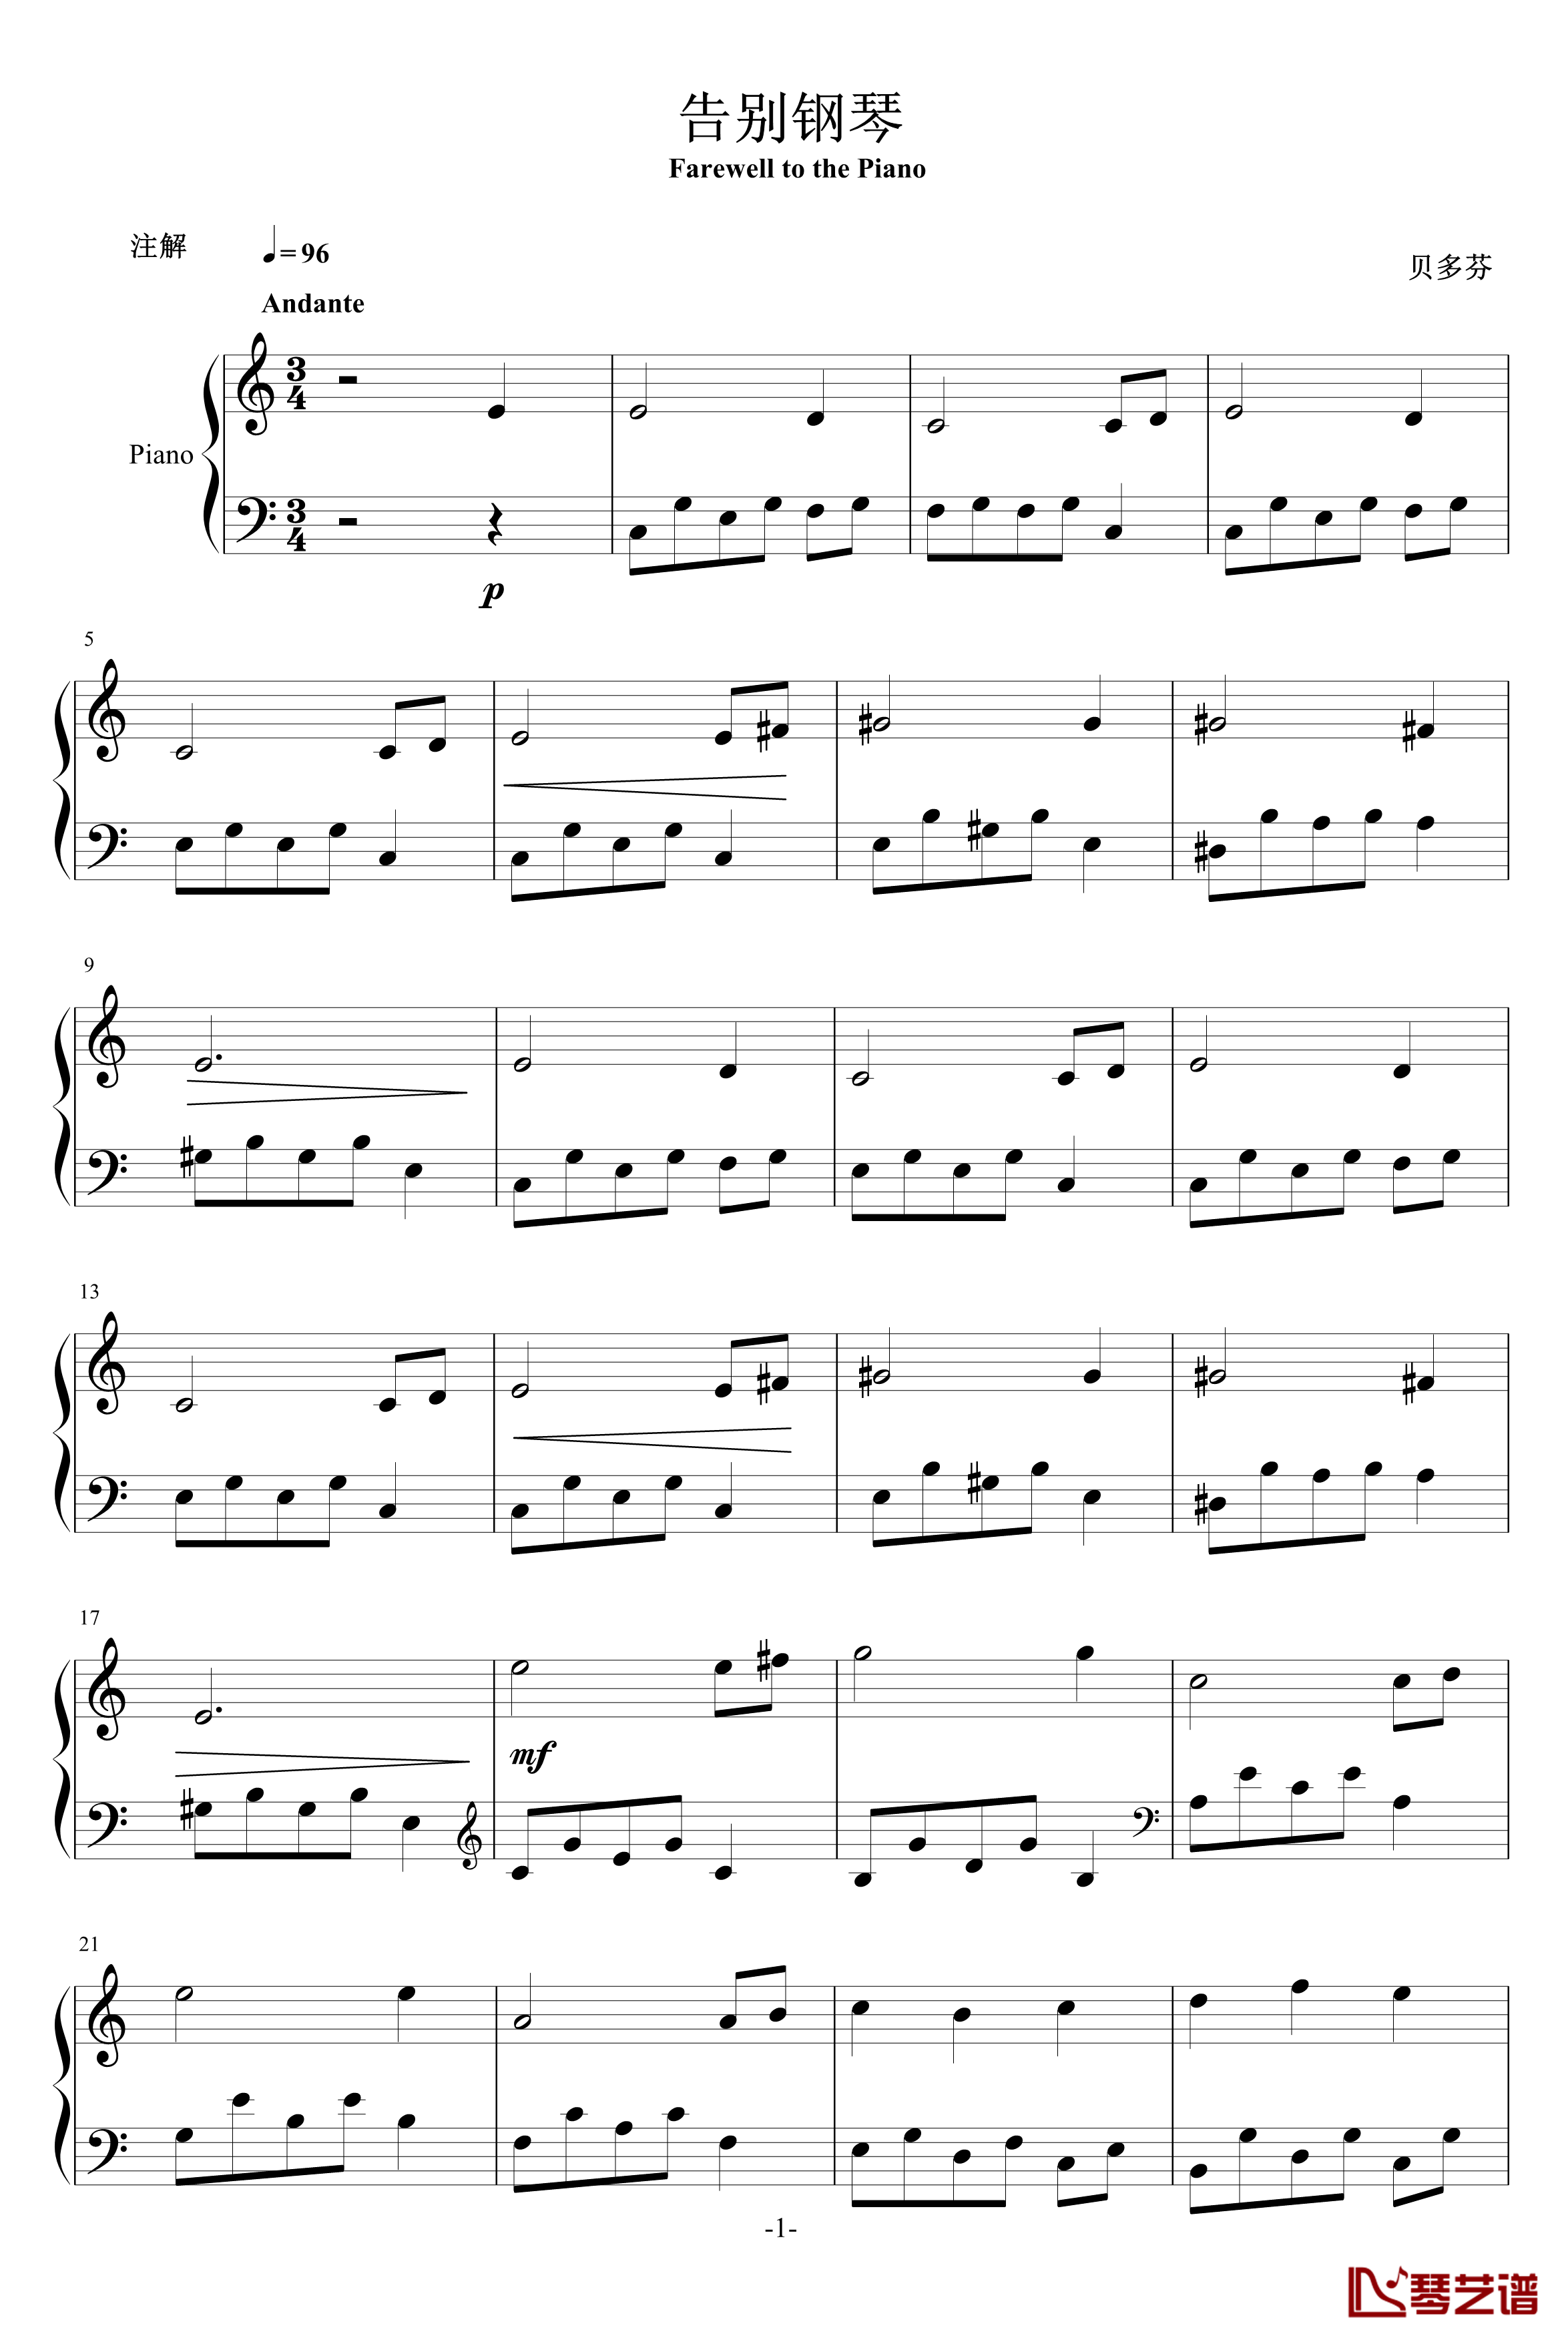 告别钢琴-贝多芬-beethoven1